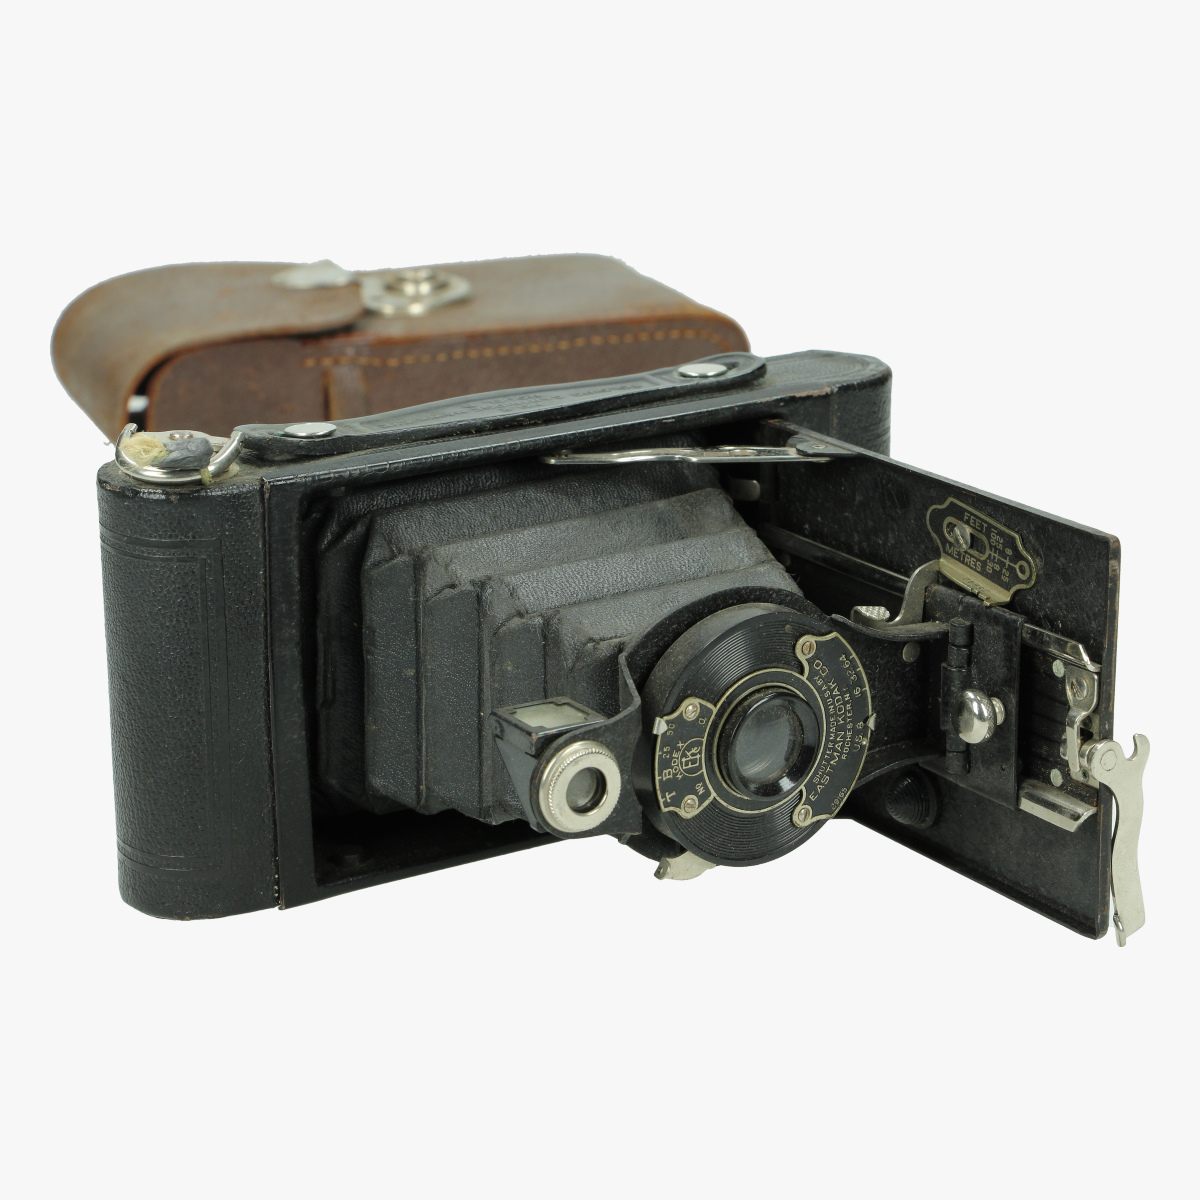 Afbeeldingen van fotocamera no°2 folding cartridge Hawk- eye model -B made in u.s.a by Eastman kodak Co Rochester N.Y use film no. 120